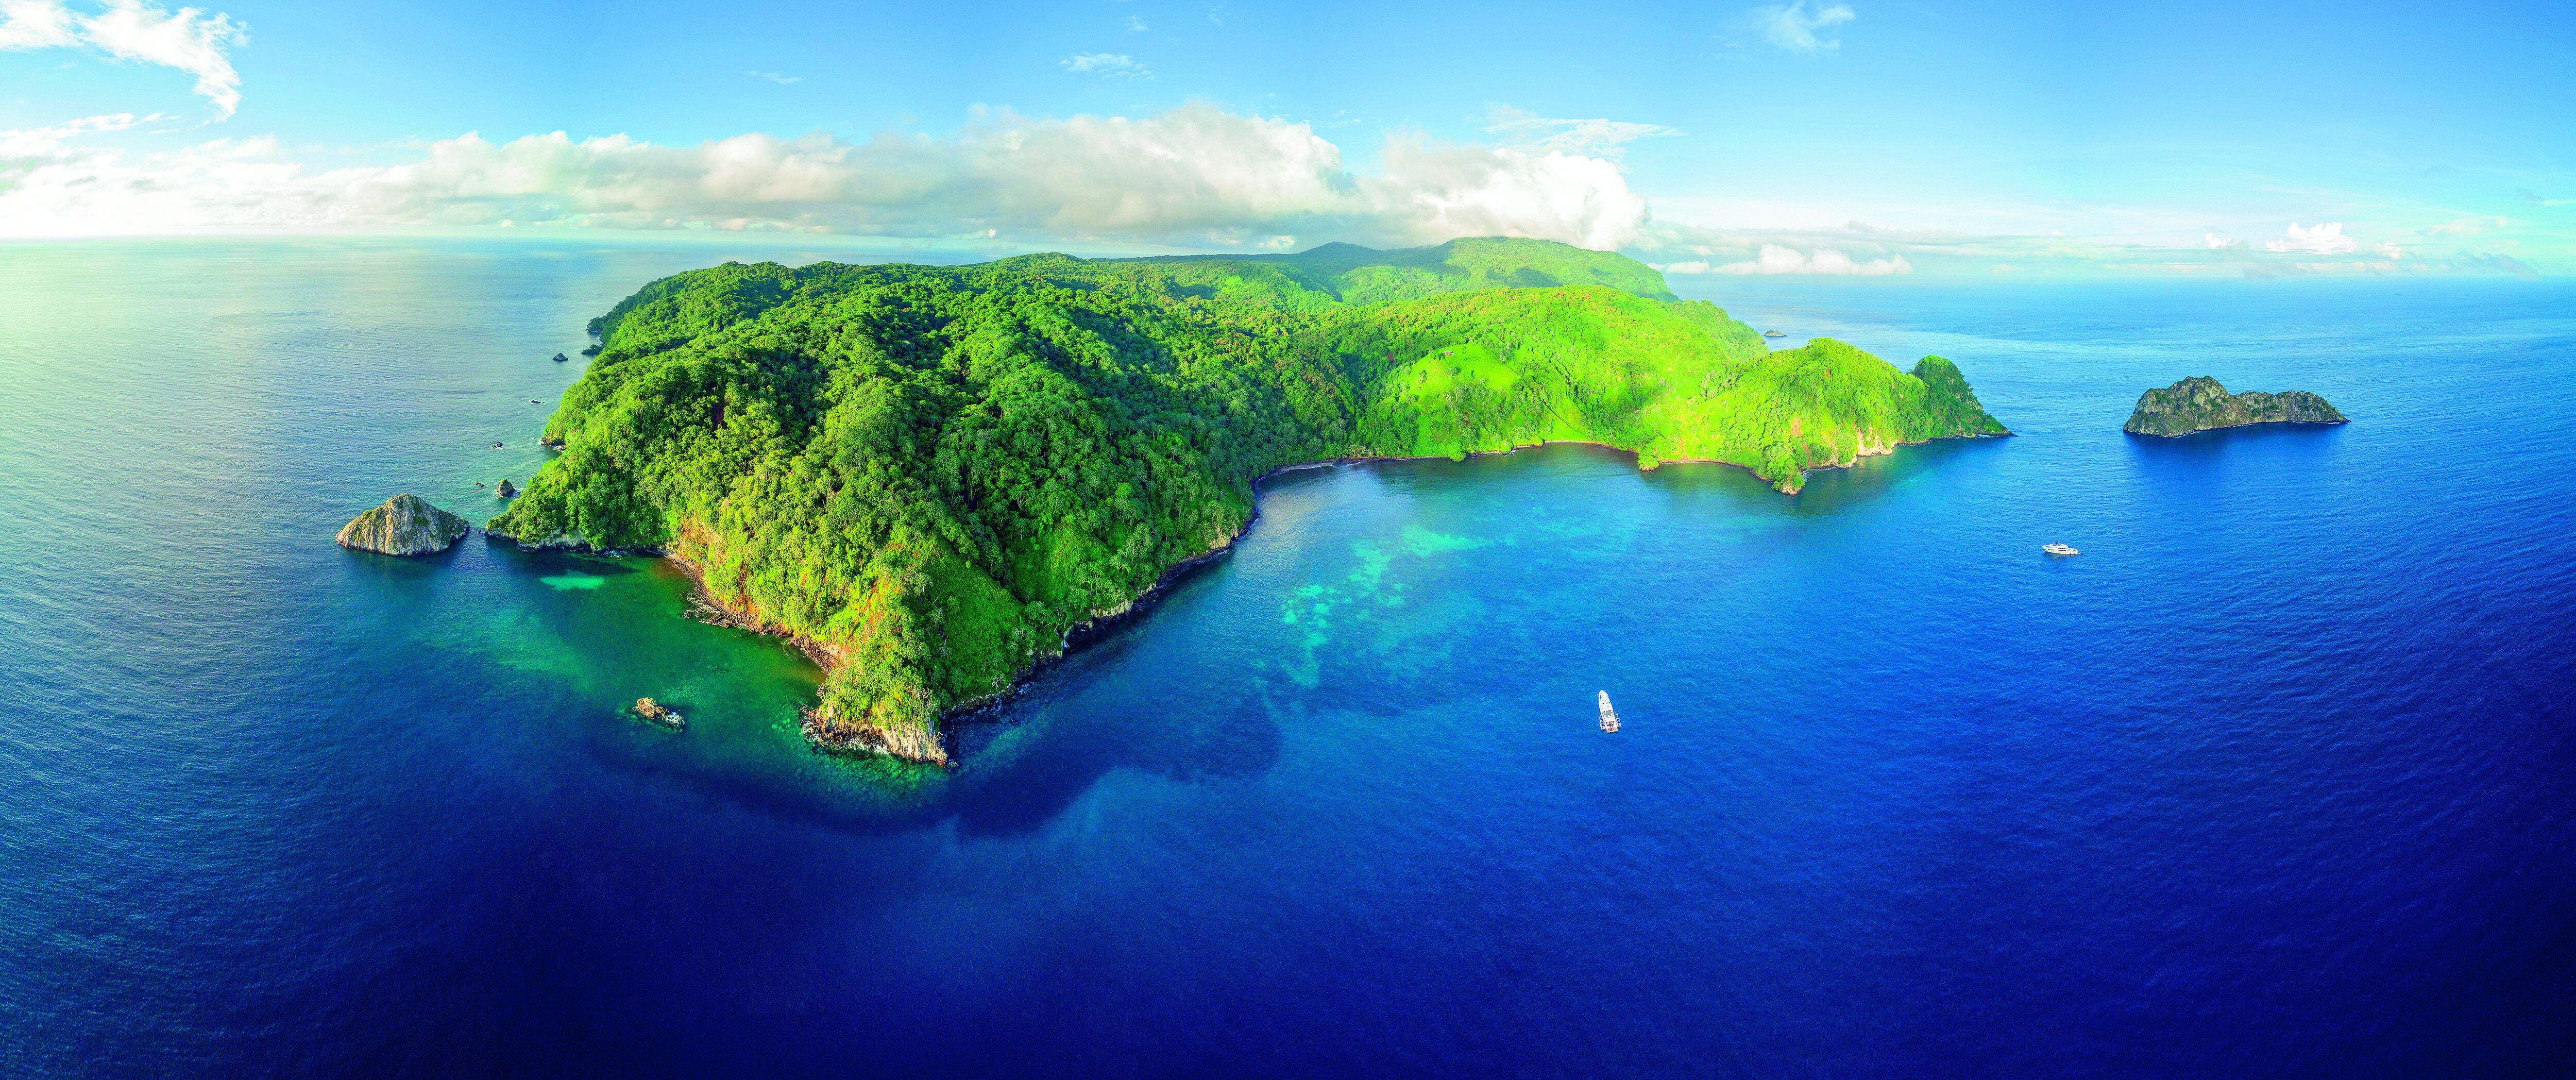 El Parque Nacional Isla del Coco, creado en 1978, alberga 1.688 especies de fauna marina, de las cuales 45 son endémicas (el 47,4% de todas las especies marinas endémicas del país). Fotografía: Cortesía.